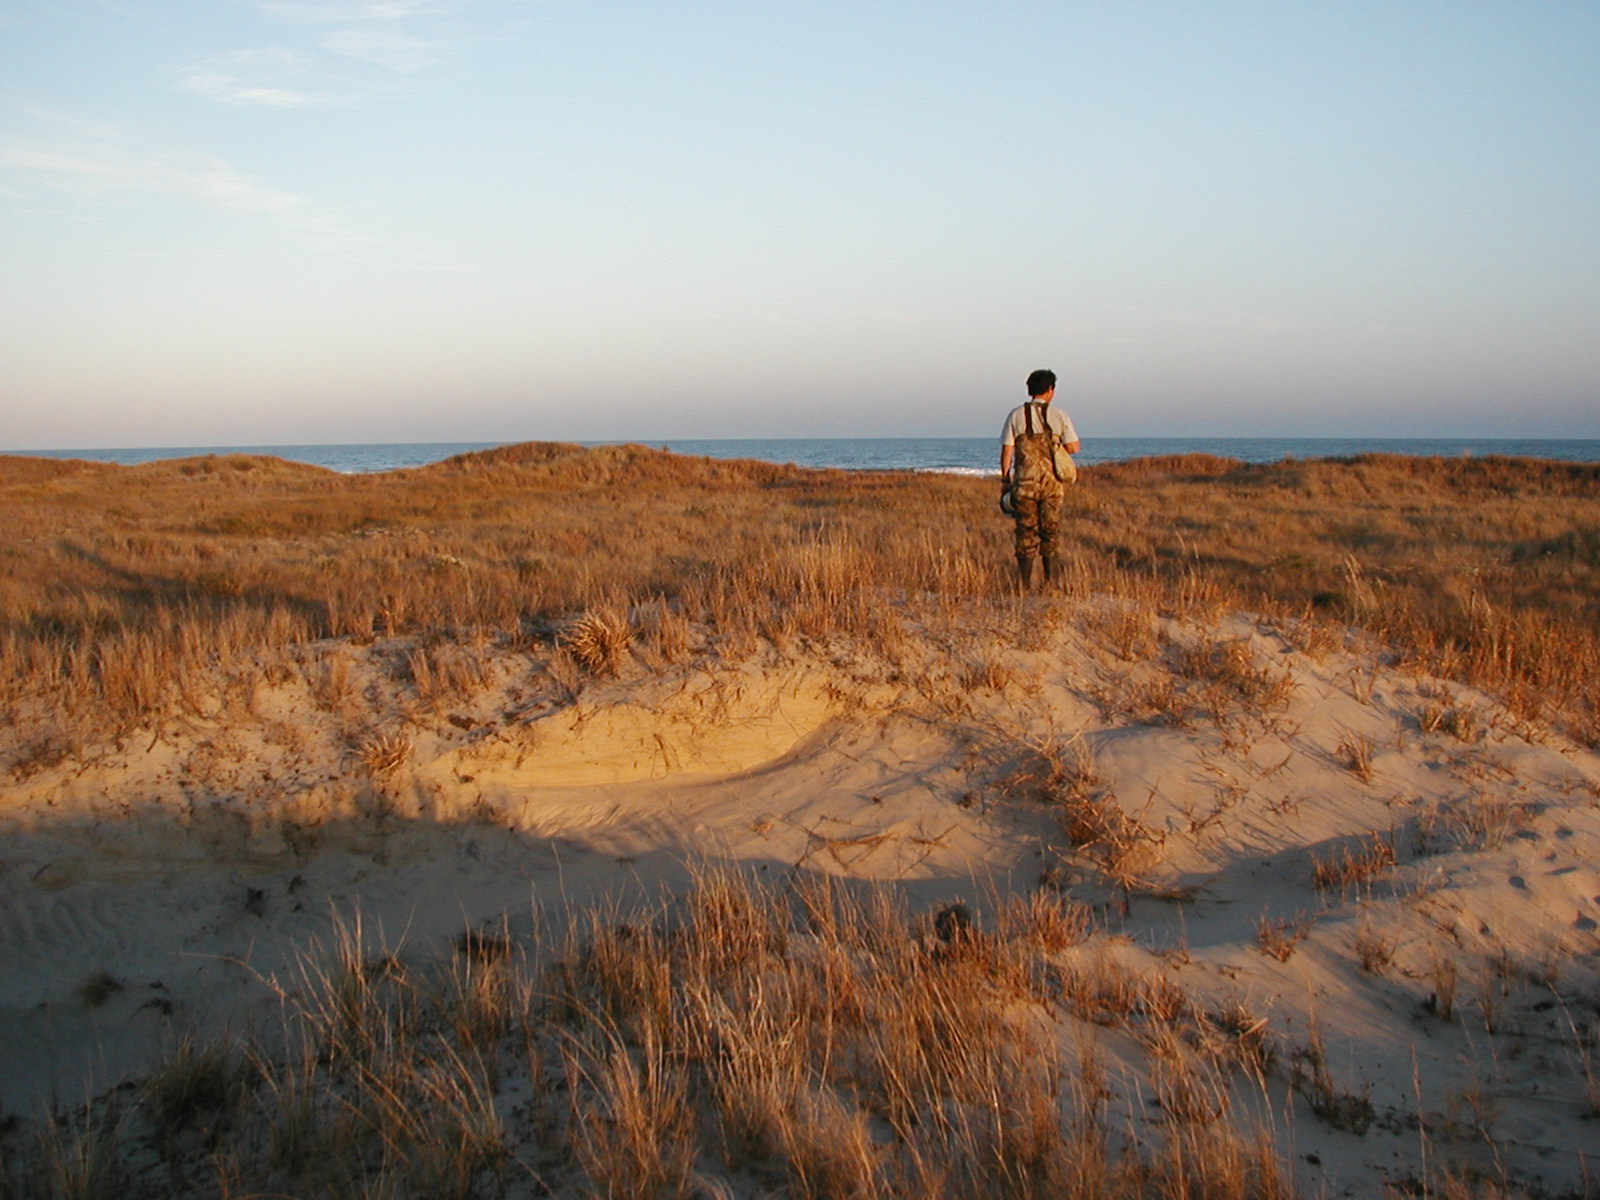 technician standing on dune, facing the ocean